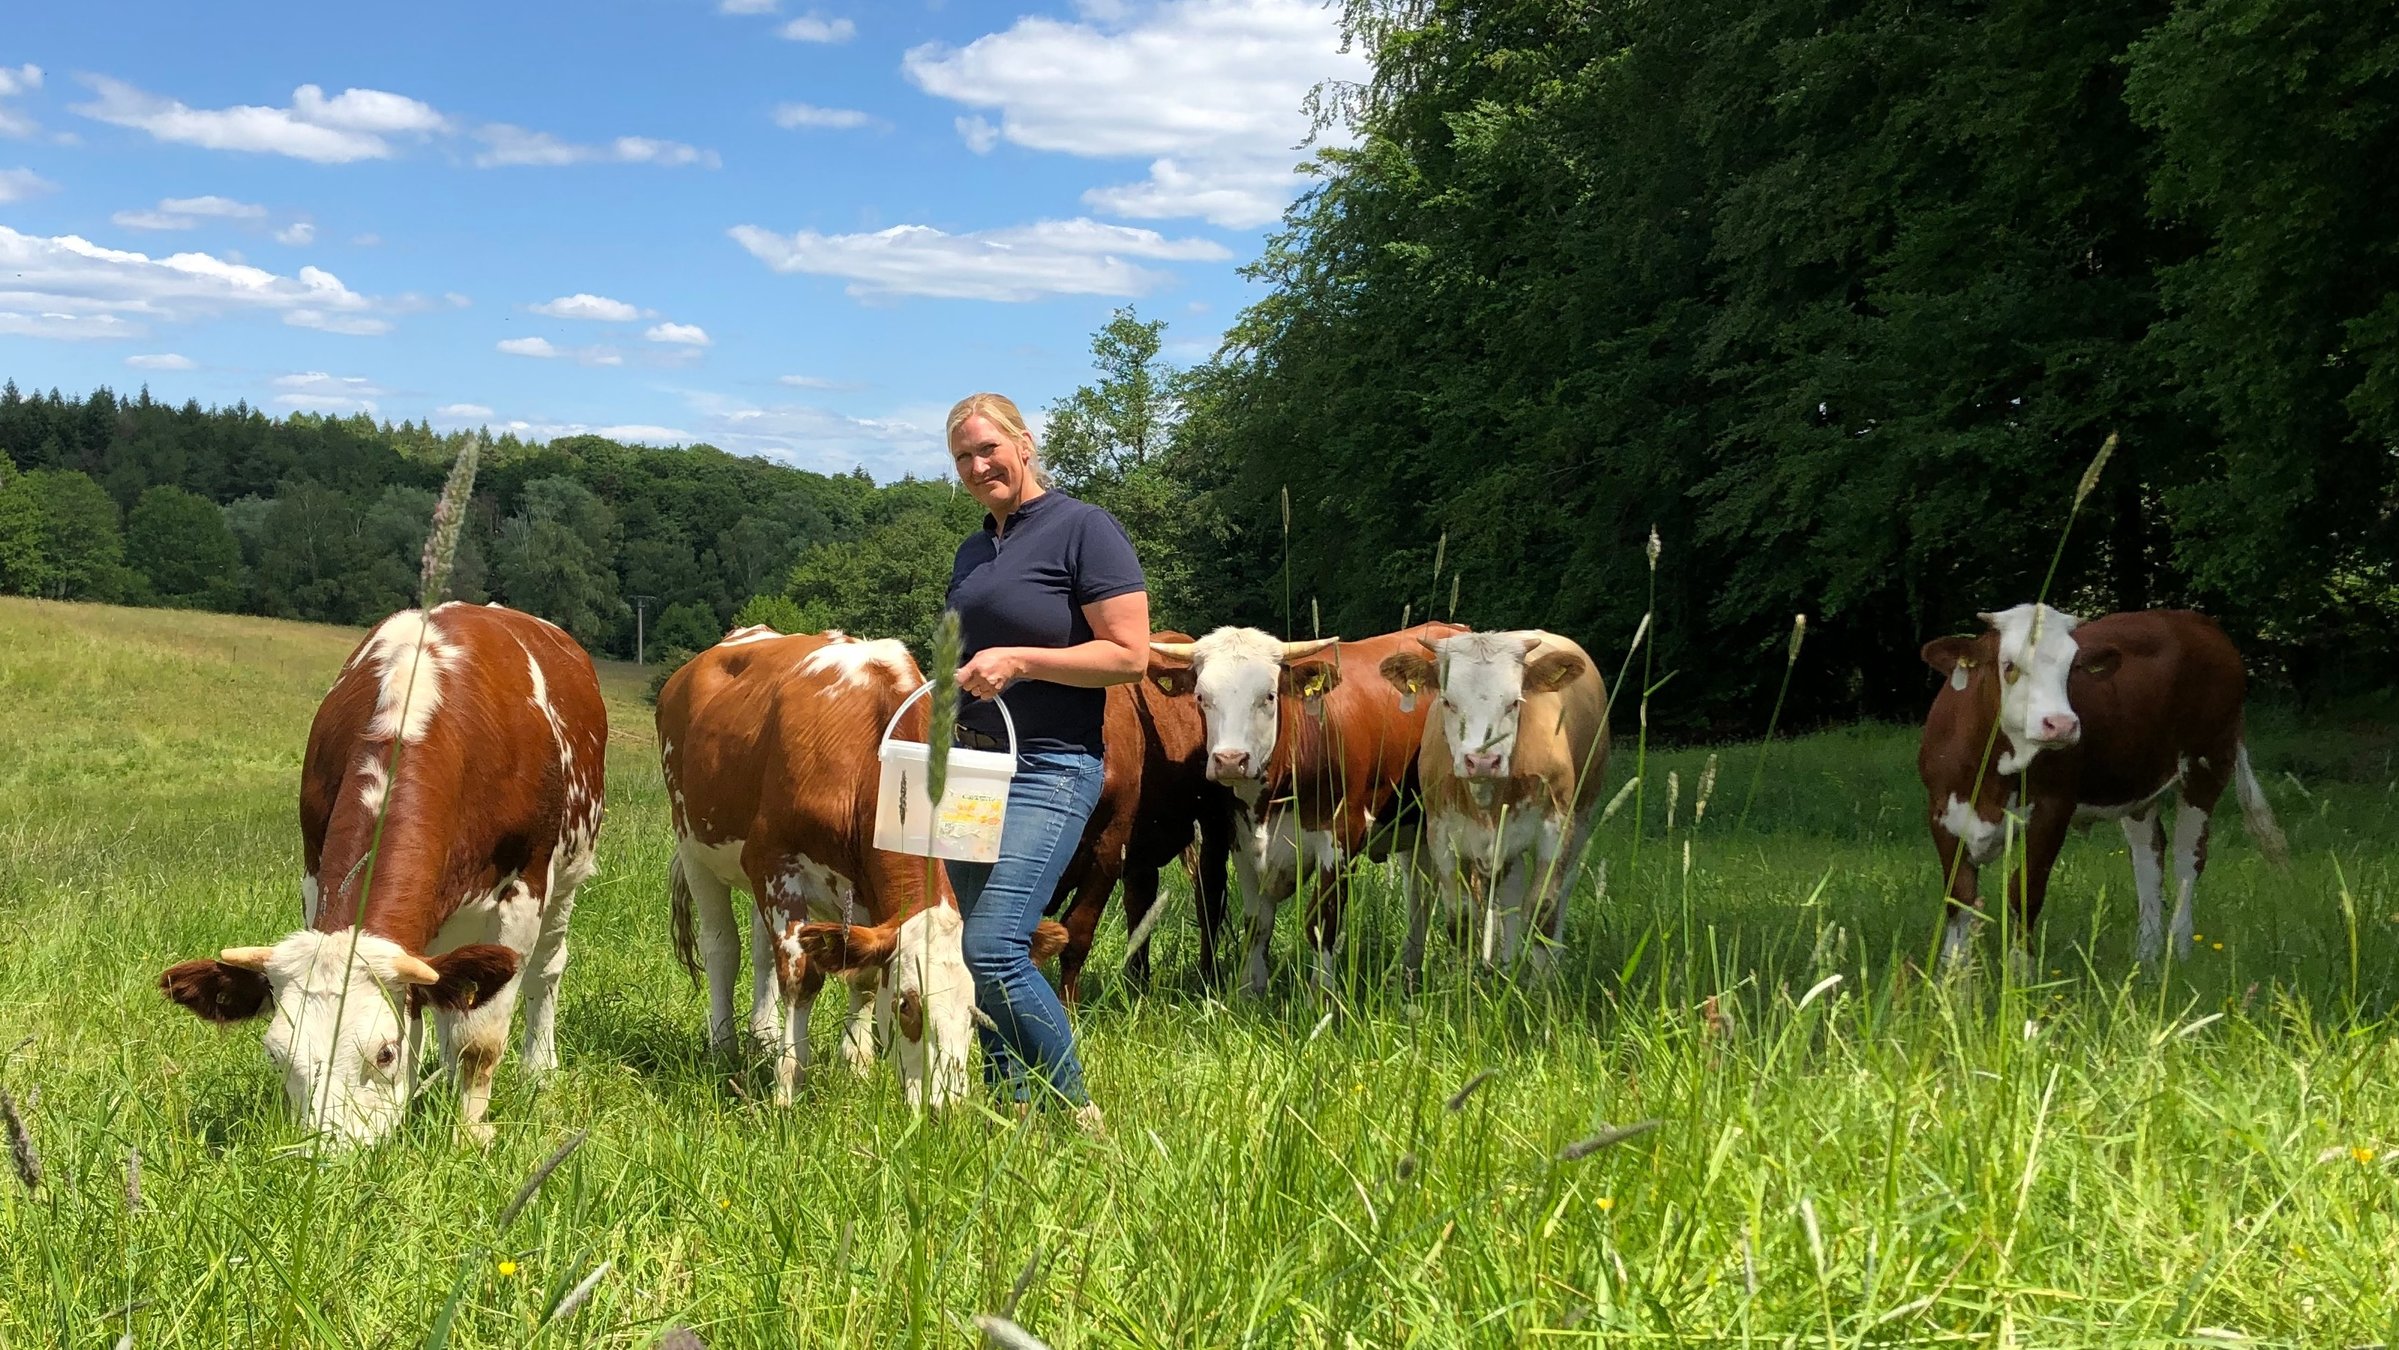 "Terra Xpress - Besser essen und besser leben - Landwirte im Stress": Dana Schwarz steht auf der Grasweide mit einem Eimer in der Hand und schaut in die Kamera. Um sie herum stehen sechs ihrer Kühe.